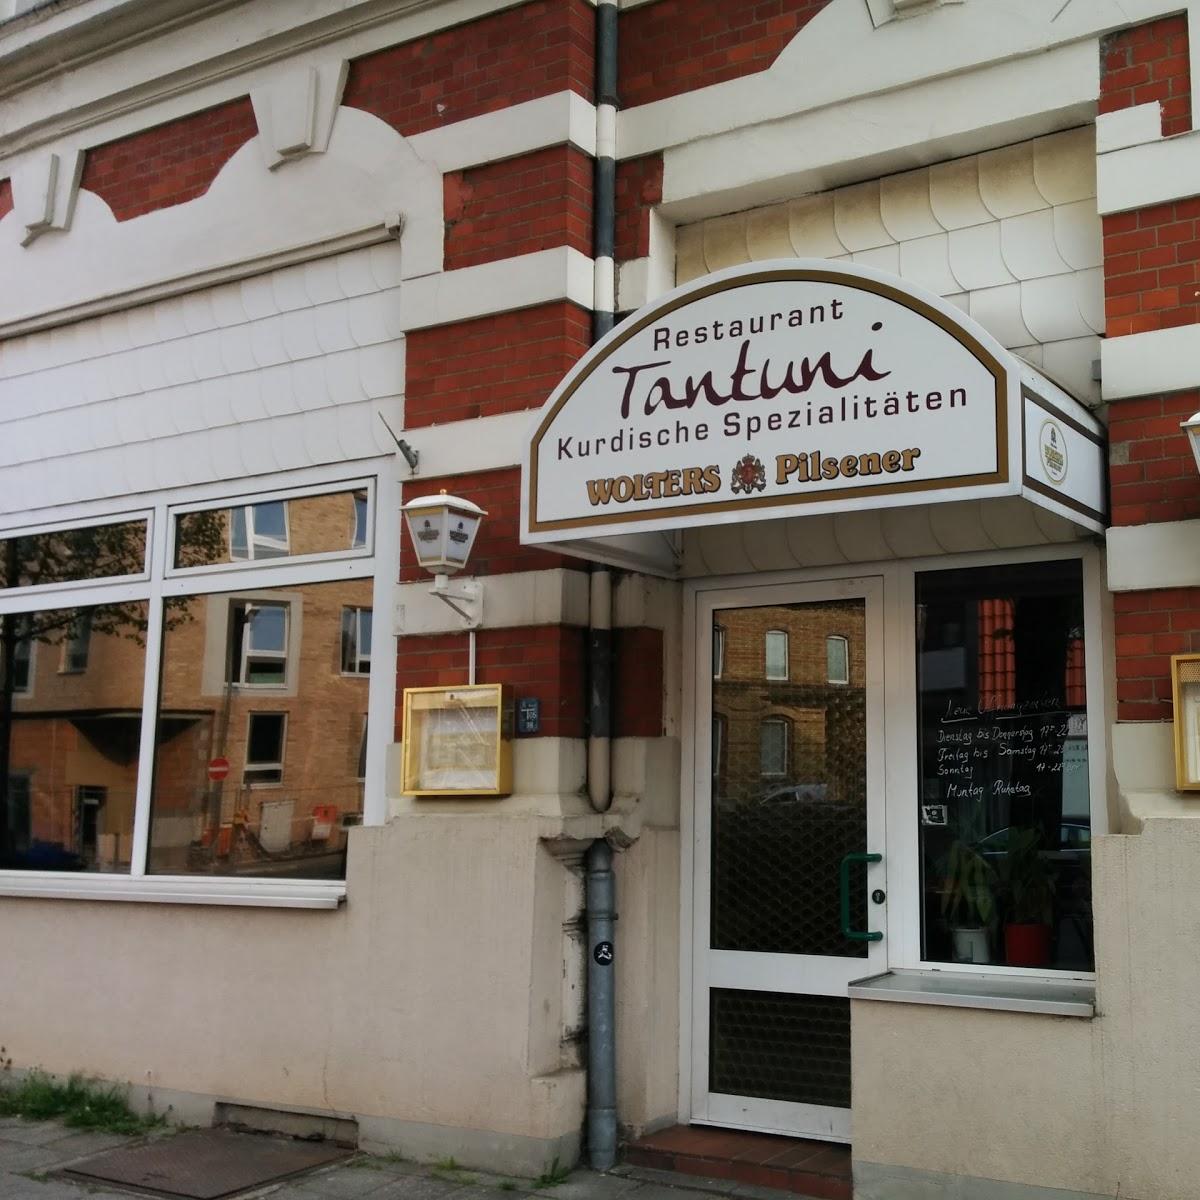 Restaurant "Tantuni" in  Braunschweig